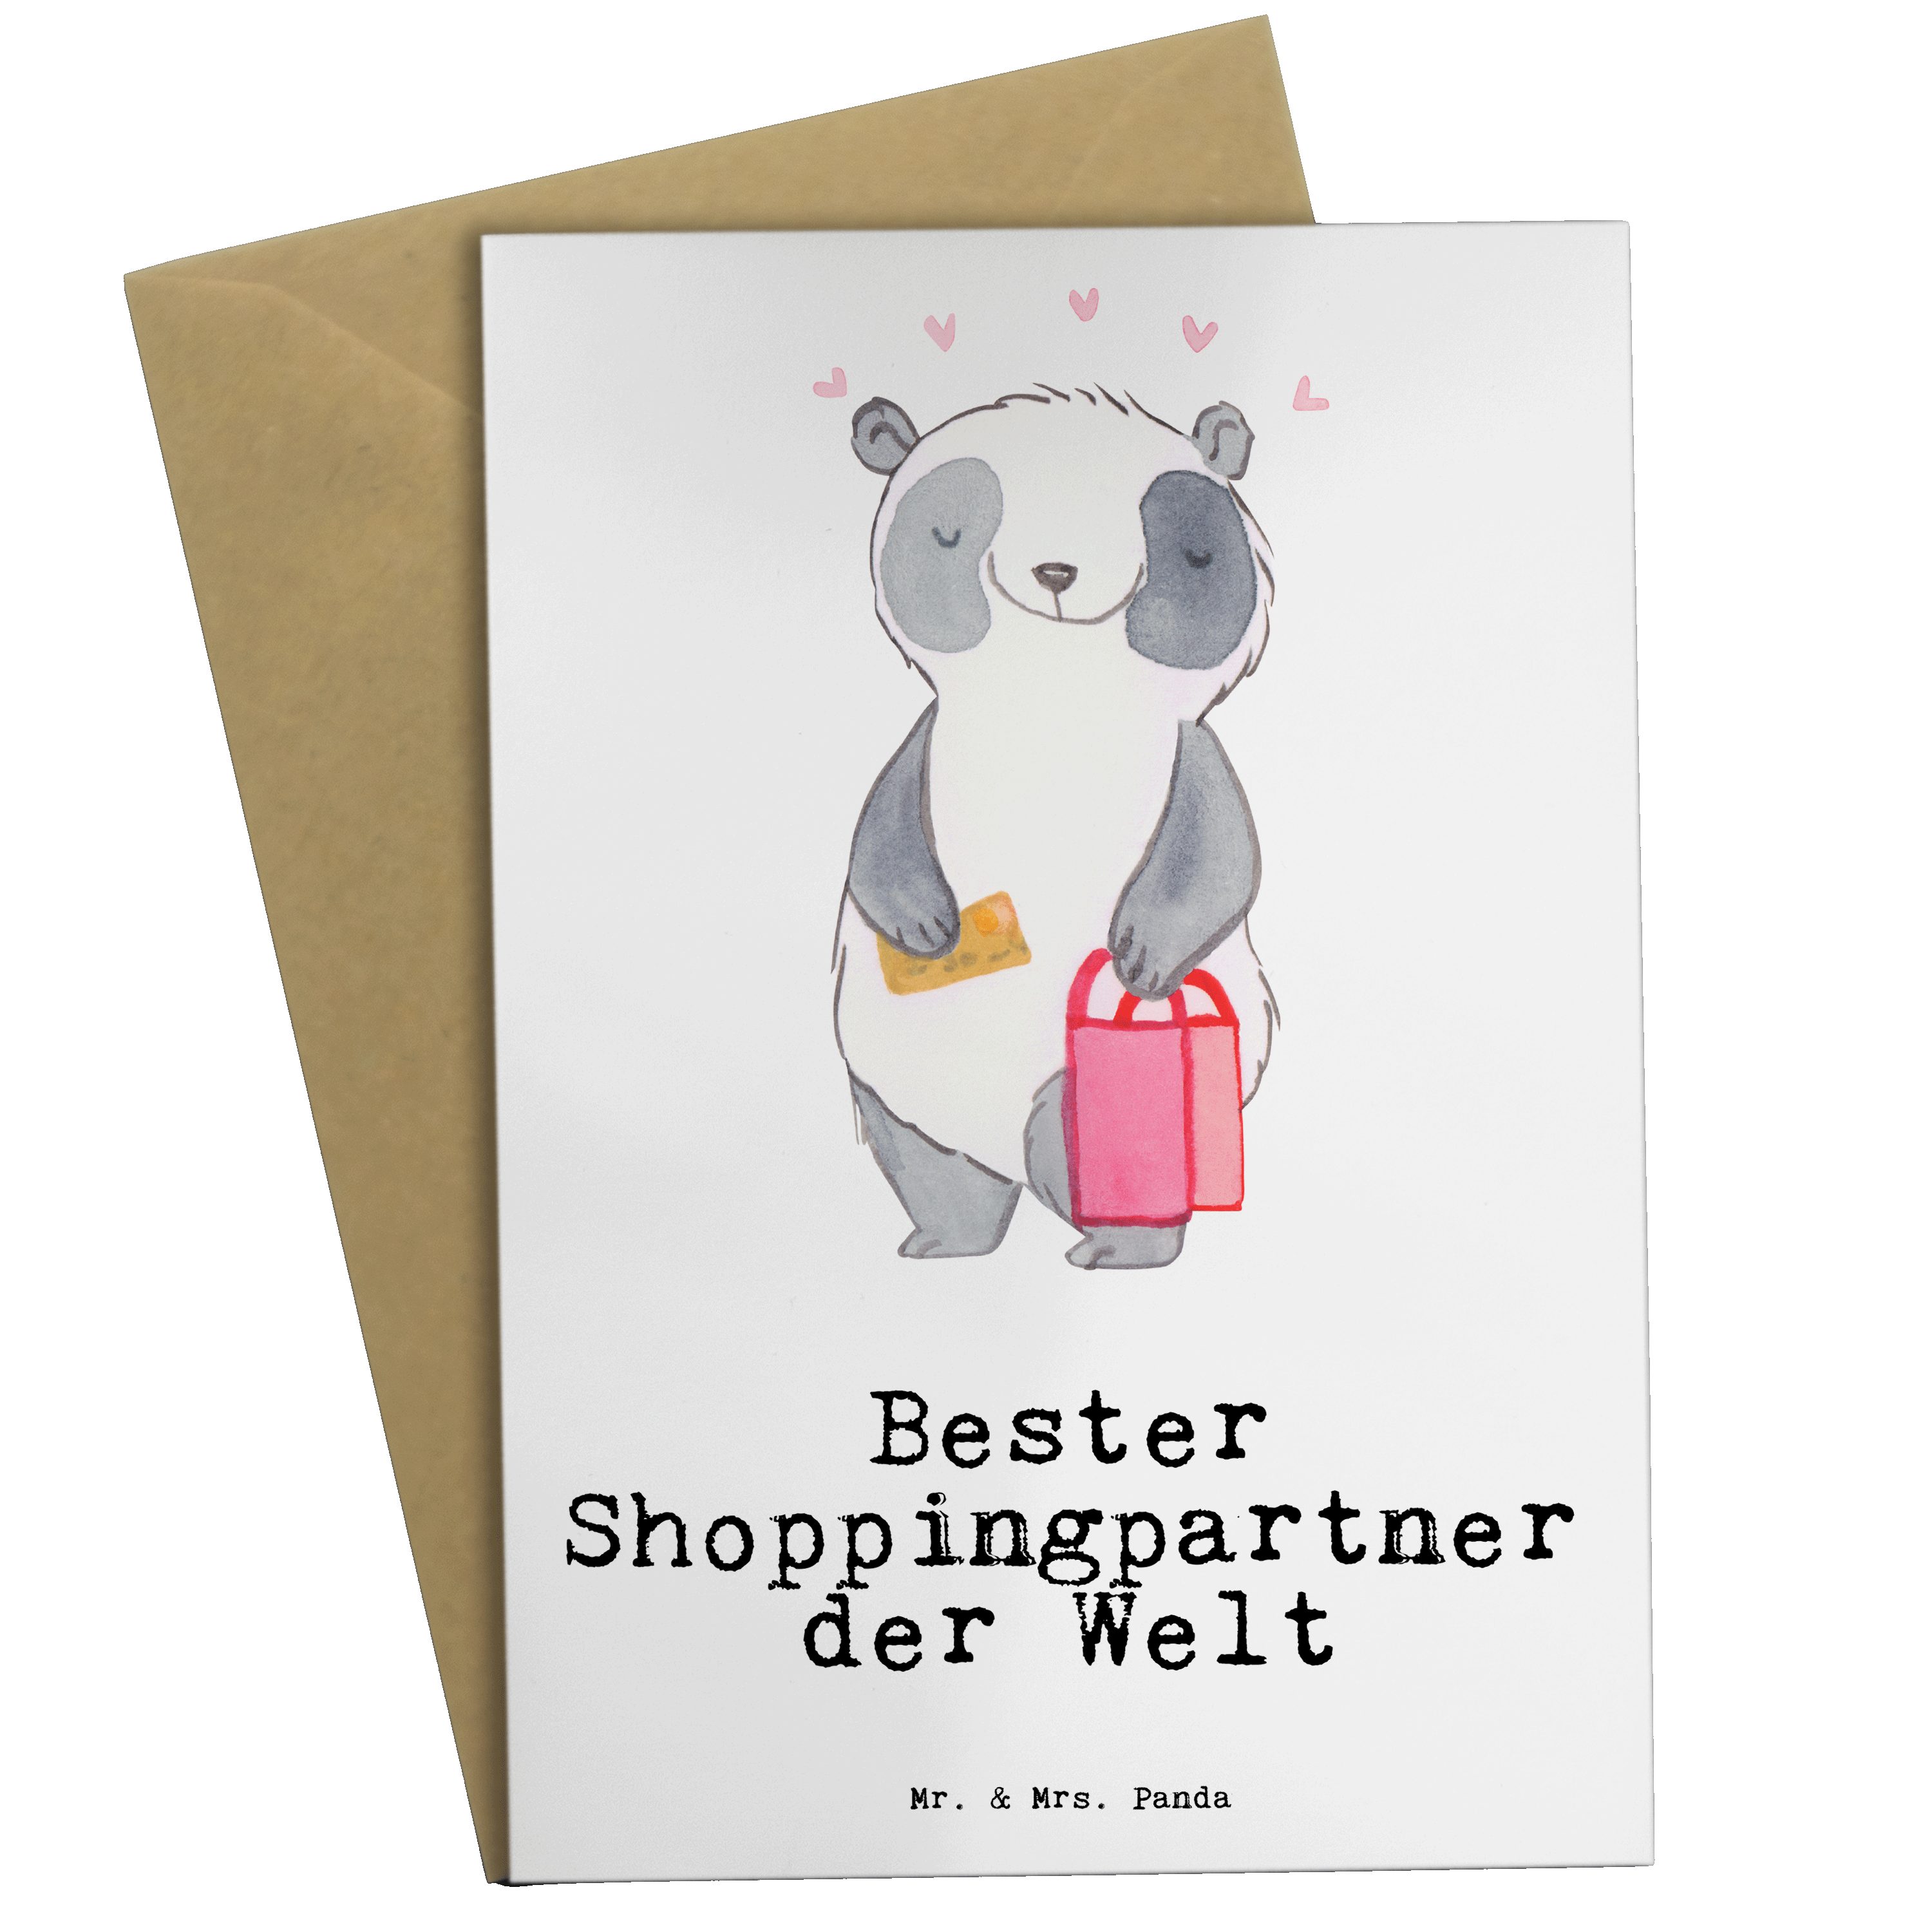 Mr. & Mrs. Panda Grußkarte Panda Bester Shoppingpartner der Welt - Weiß - Geschenk, Glückwunschk